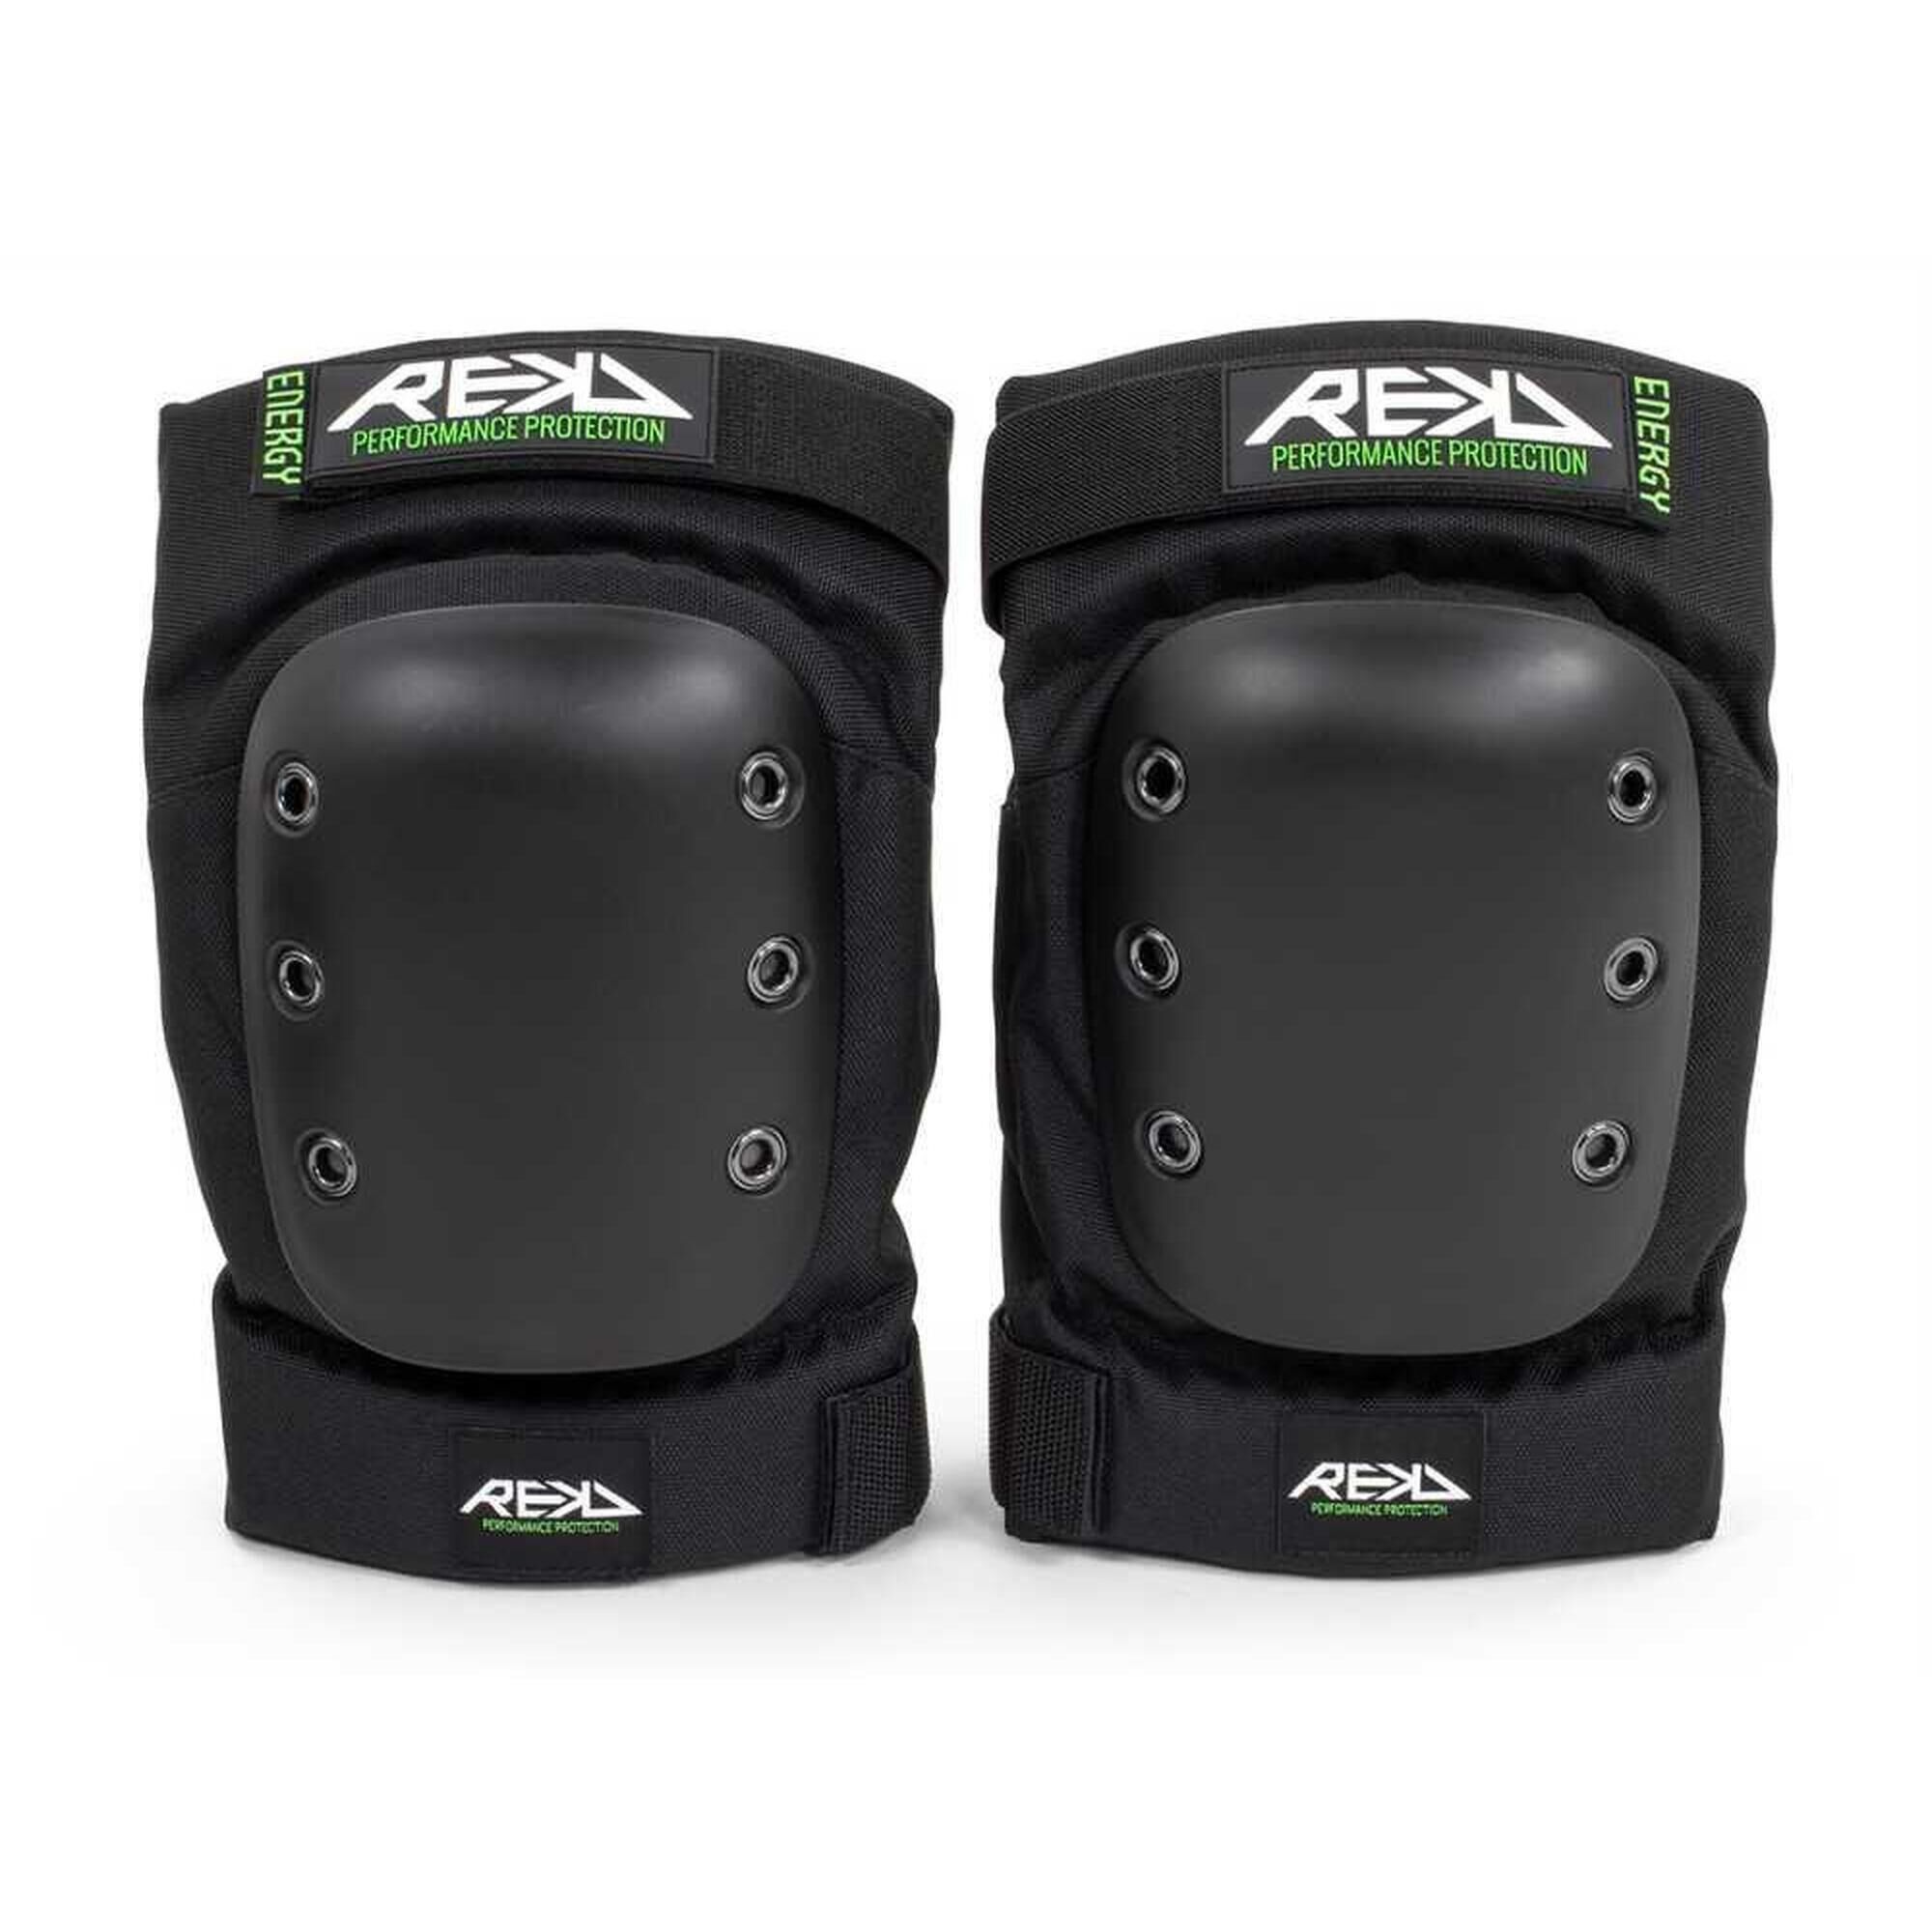 REKD RKD655 Energy Pro Ramp Knee Pads